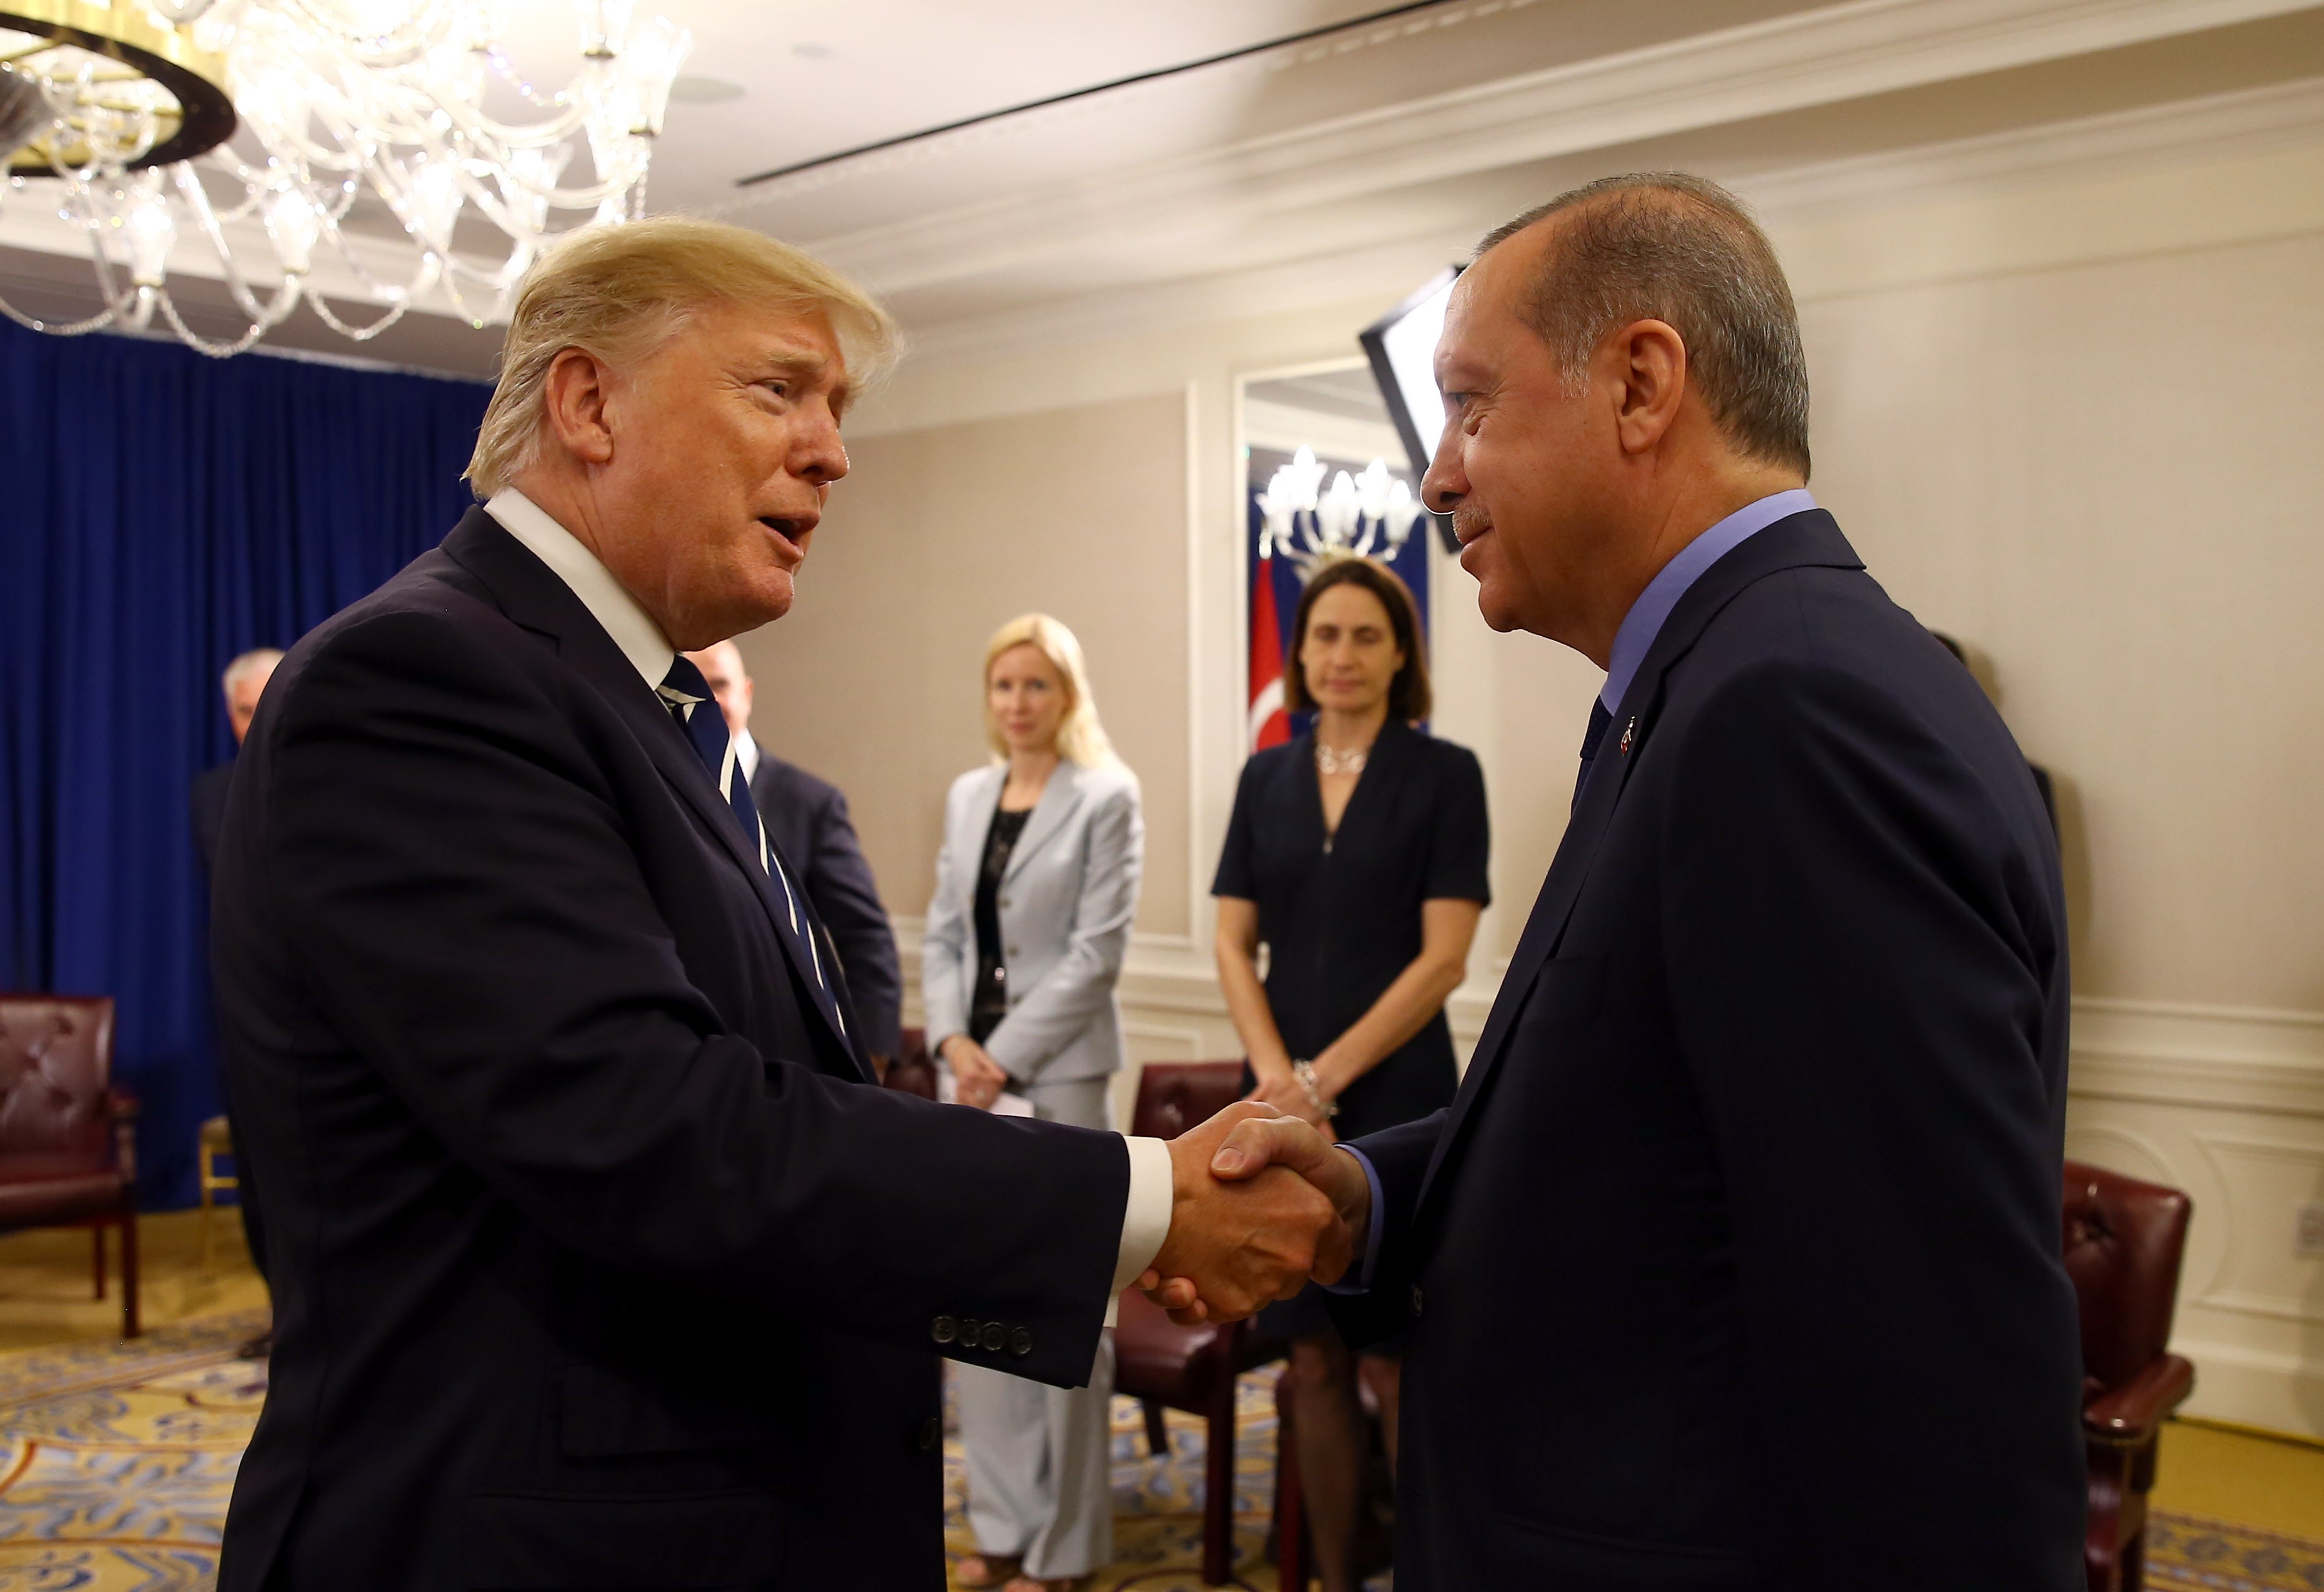 Erdogannak most még jól is jöhet a konfliktusok éleződése az USA-val